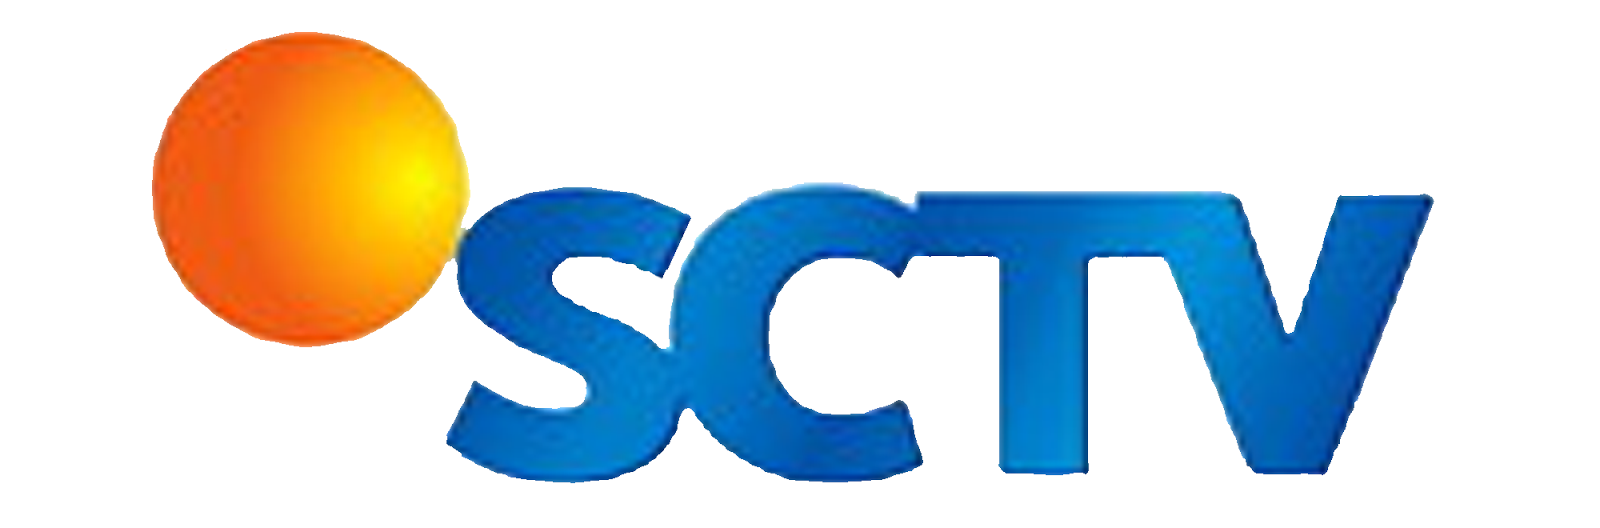 Logo SCTV Terbaru  Kumpulan Logo Terlengkap